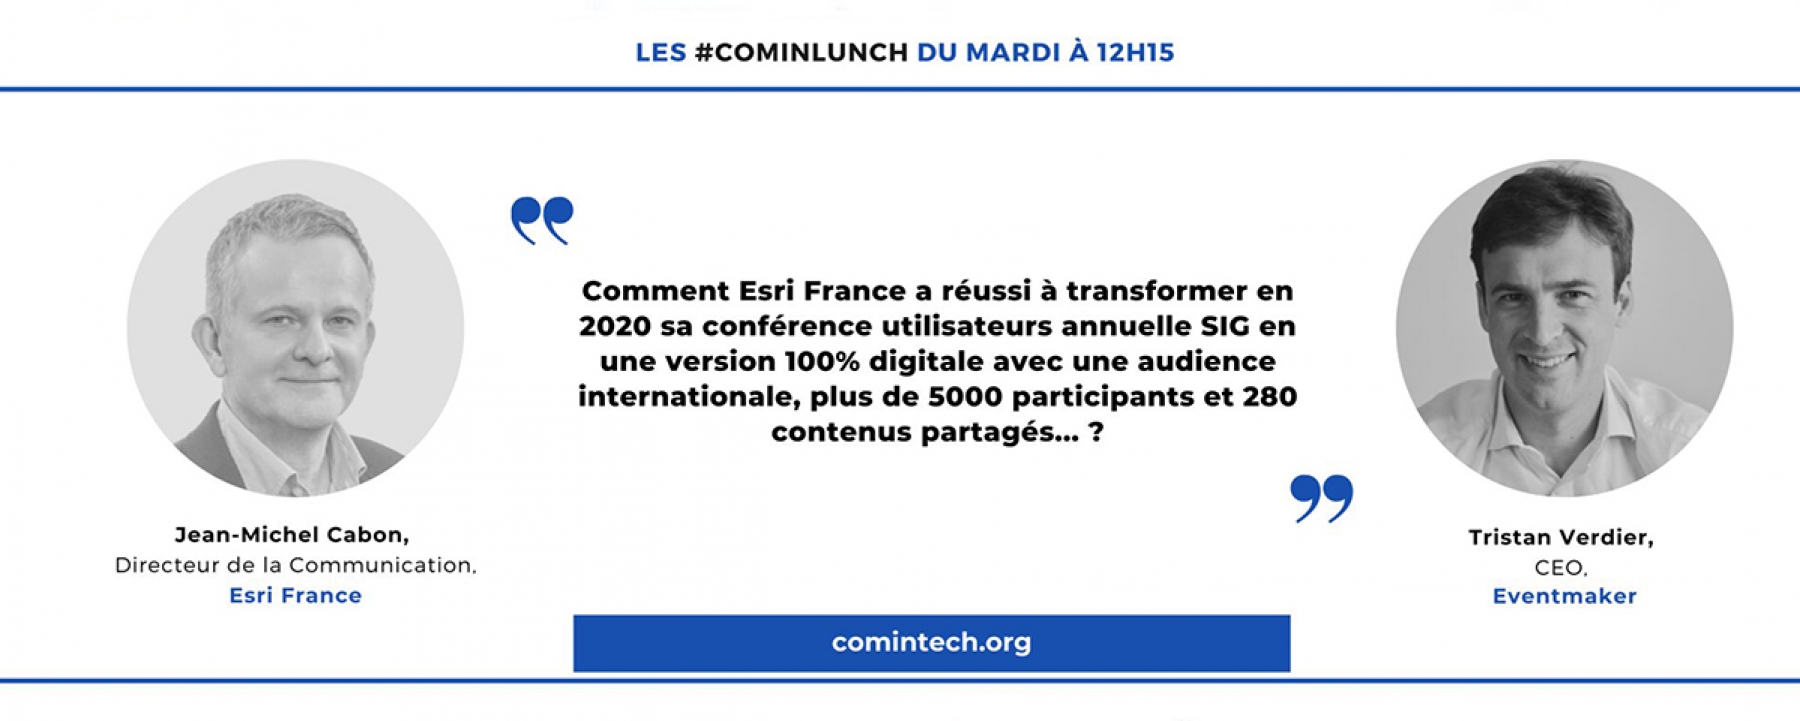 Les lives #ComInTech : live du mardi 9 février, organisé par MPI France Suisse le 9 février